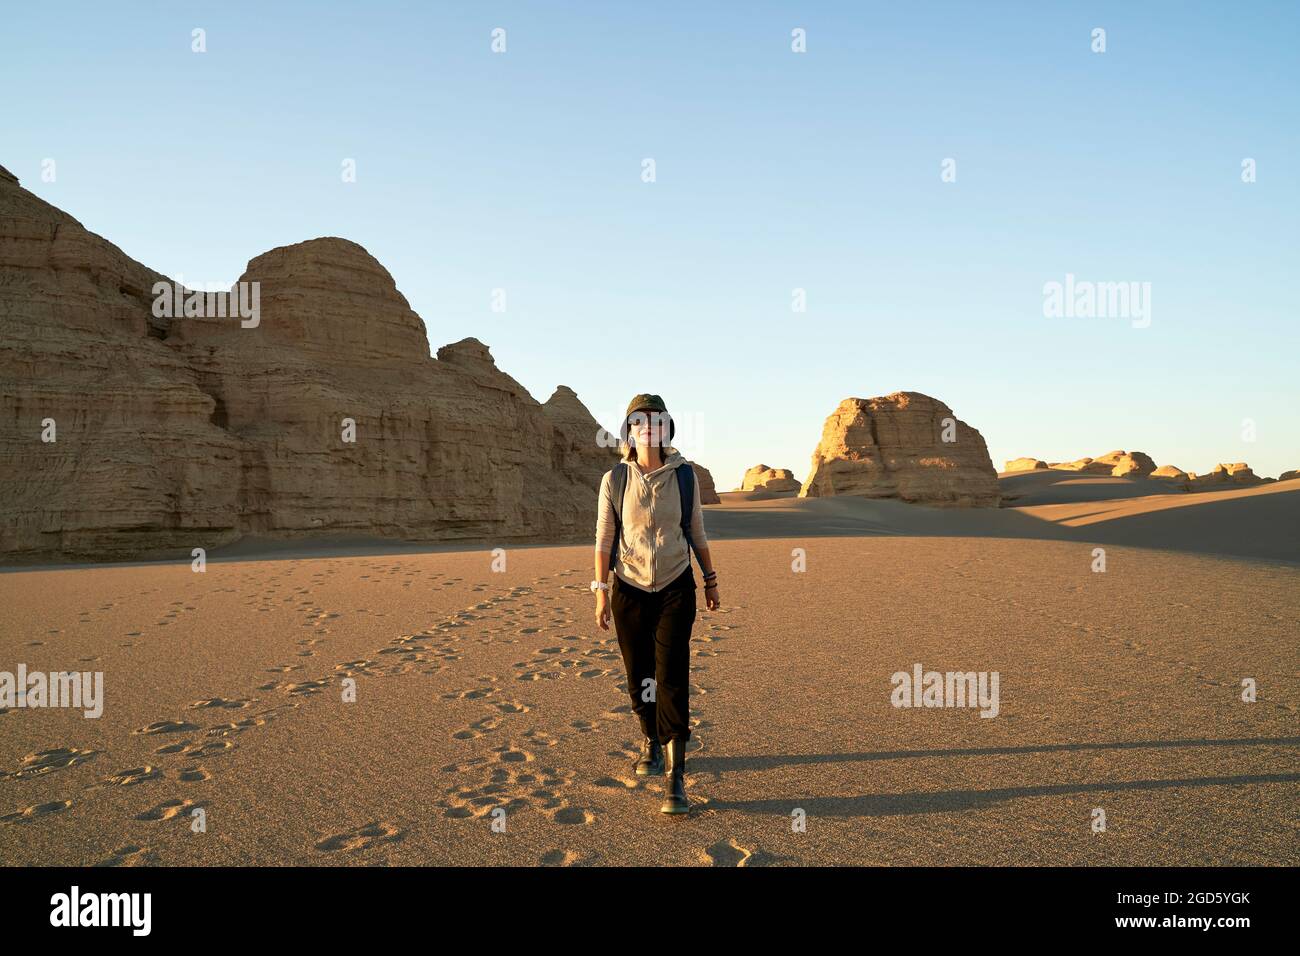 femme asiatique voyageur routard marchant dans le désert au coucher du soleil avec yardang landform en arrière-plan Banque D'Images